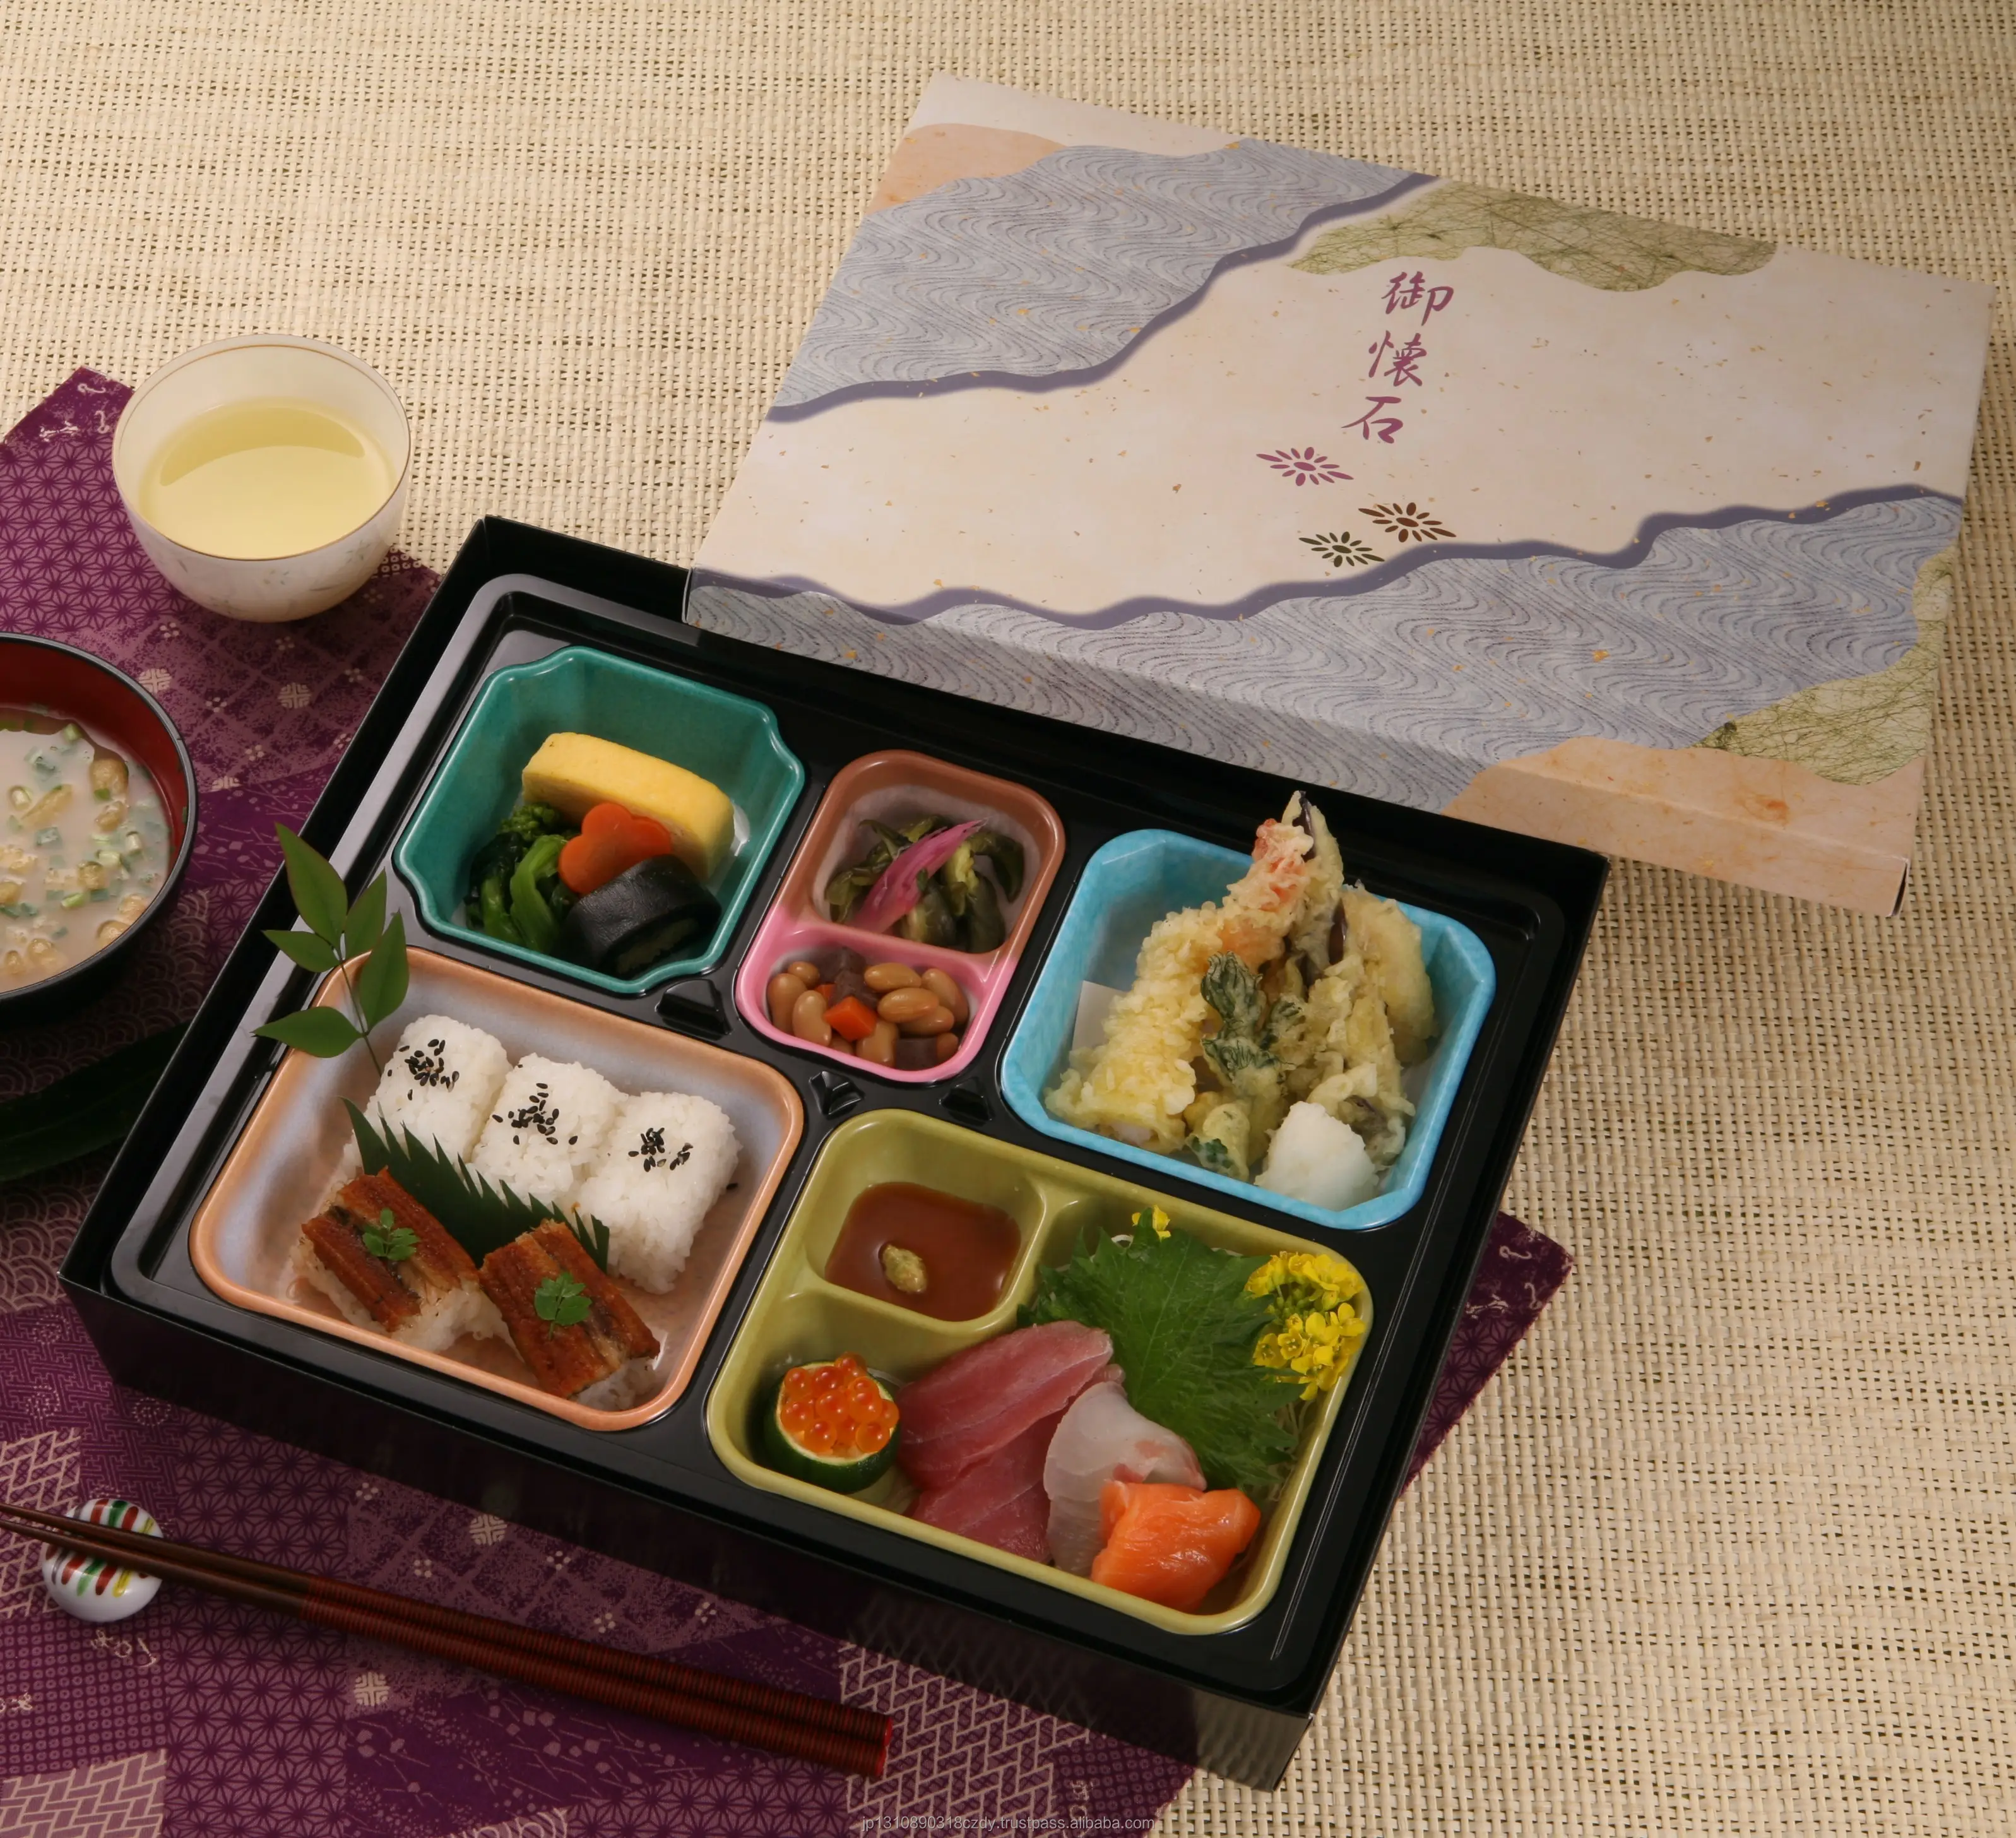 음식 급료 종이 일본 도시락 도시락 주문 가정 납품 처분할 수 있는 점심 포장 상자 한 시간 새로운 디자인 콘테이너